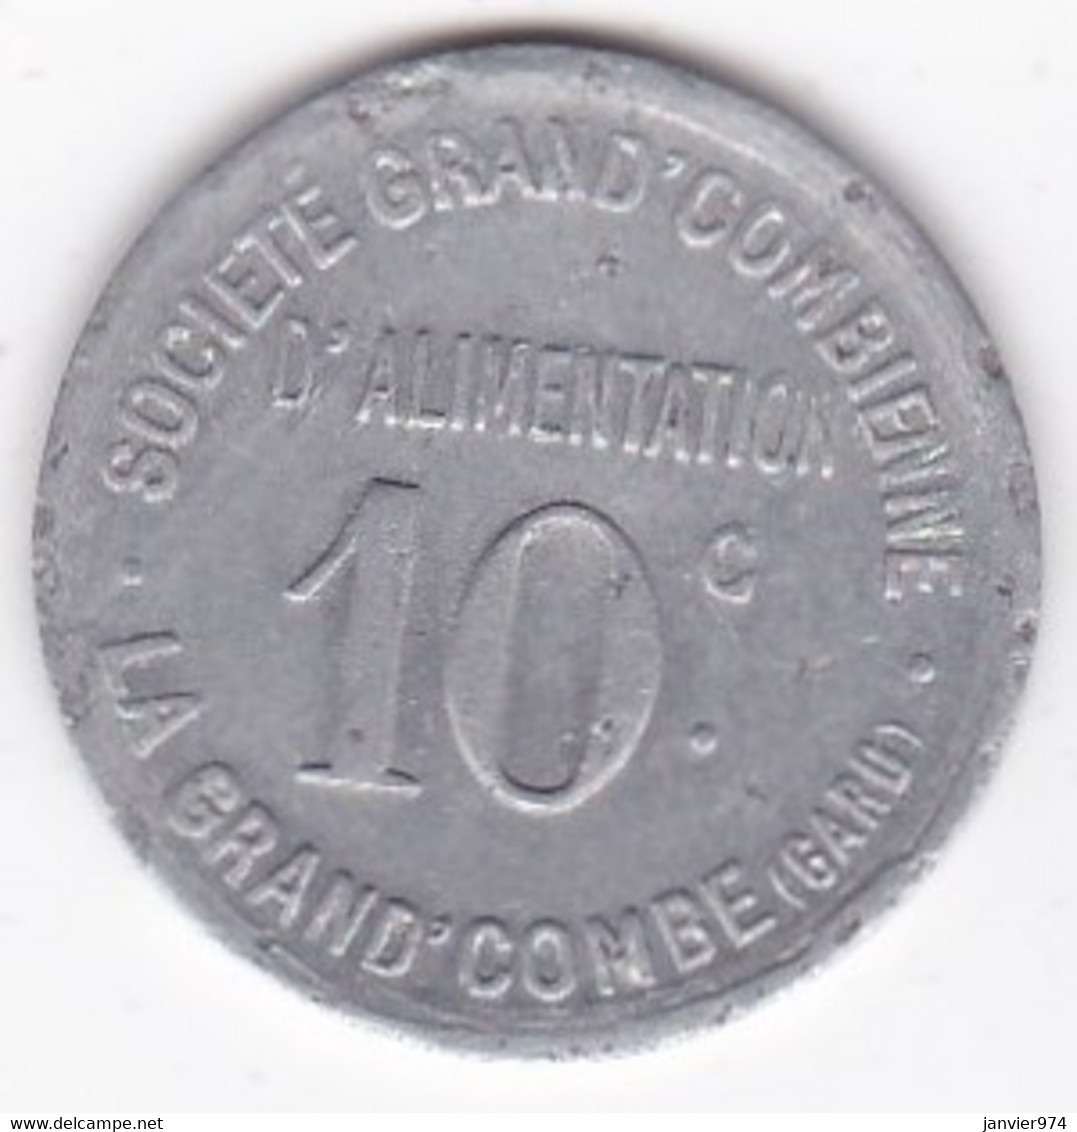 30. Gard. La Grand Combe. Société Grand' Combienne D'alimentation 10 Centimes, En Aluminium Rond - Notgeld